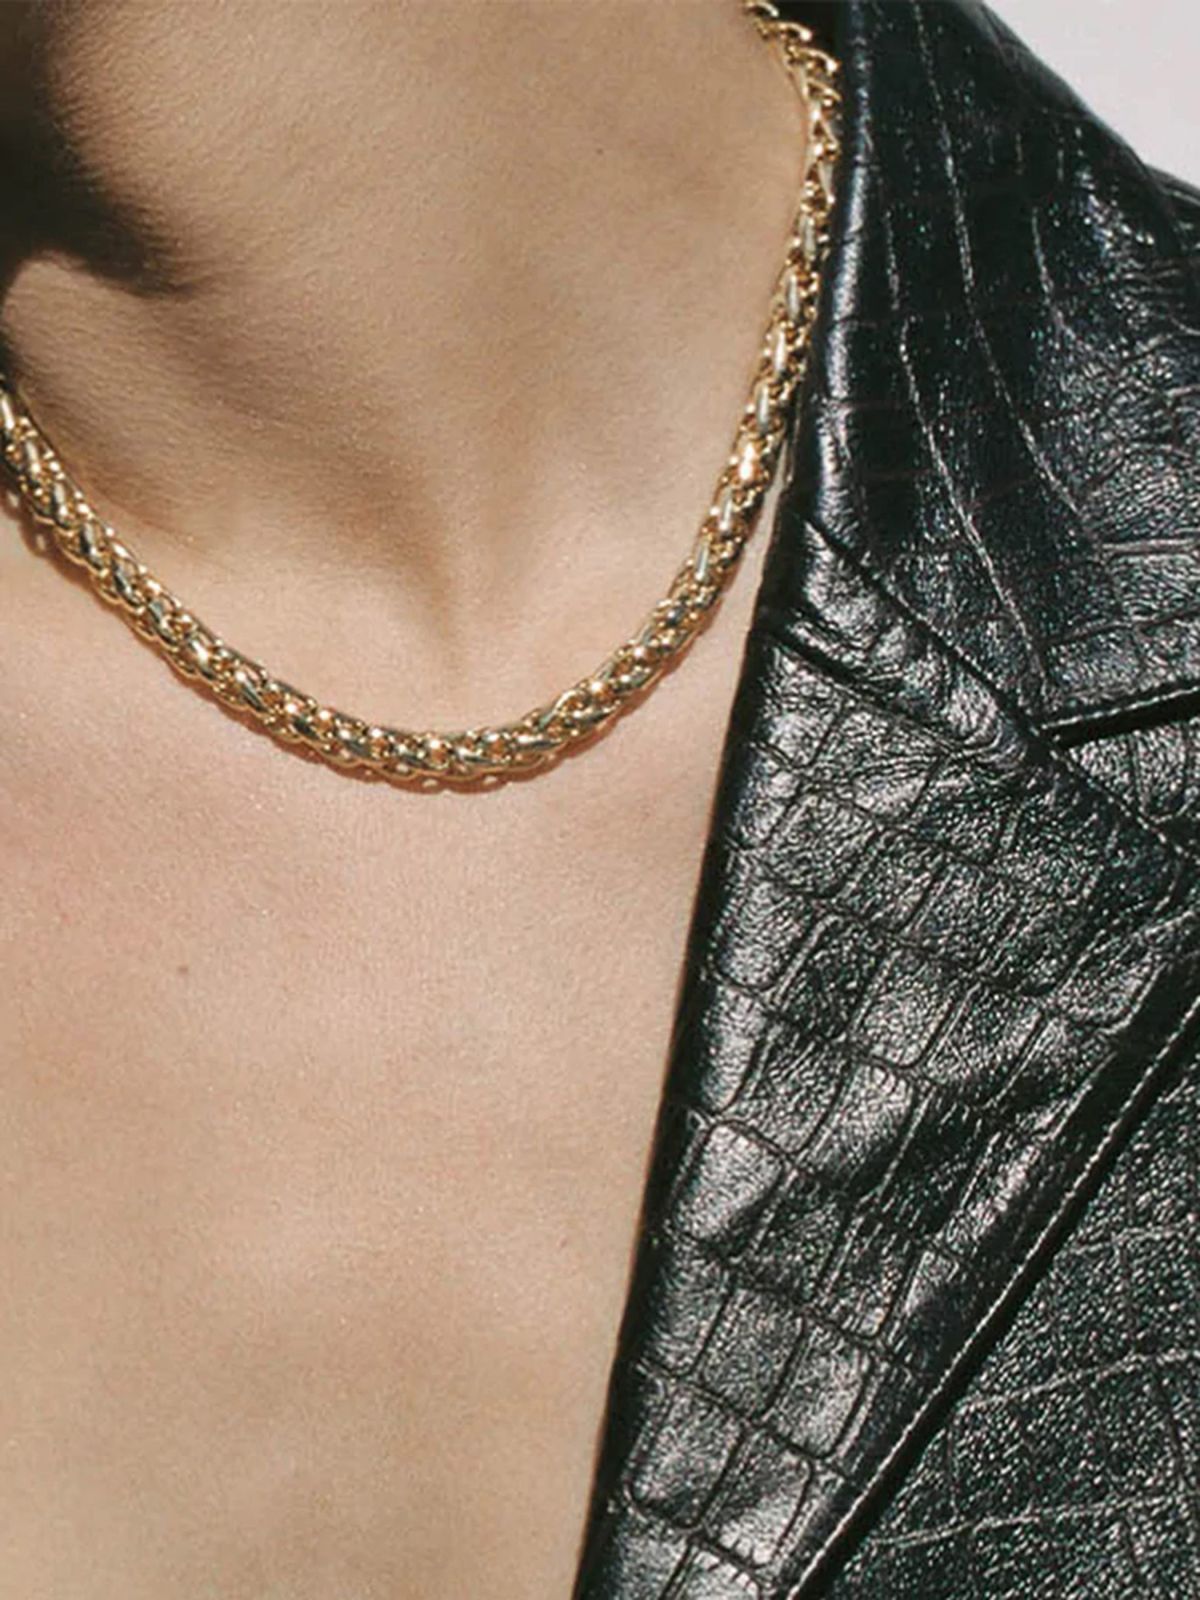  שרשרת חוליות בציפוי זהב Sarah Necklace / נשים של SHASHI